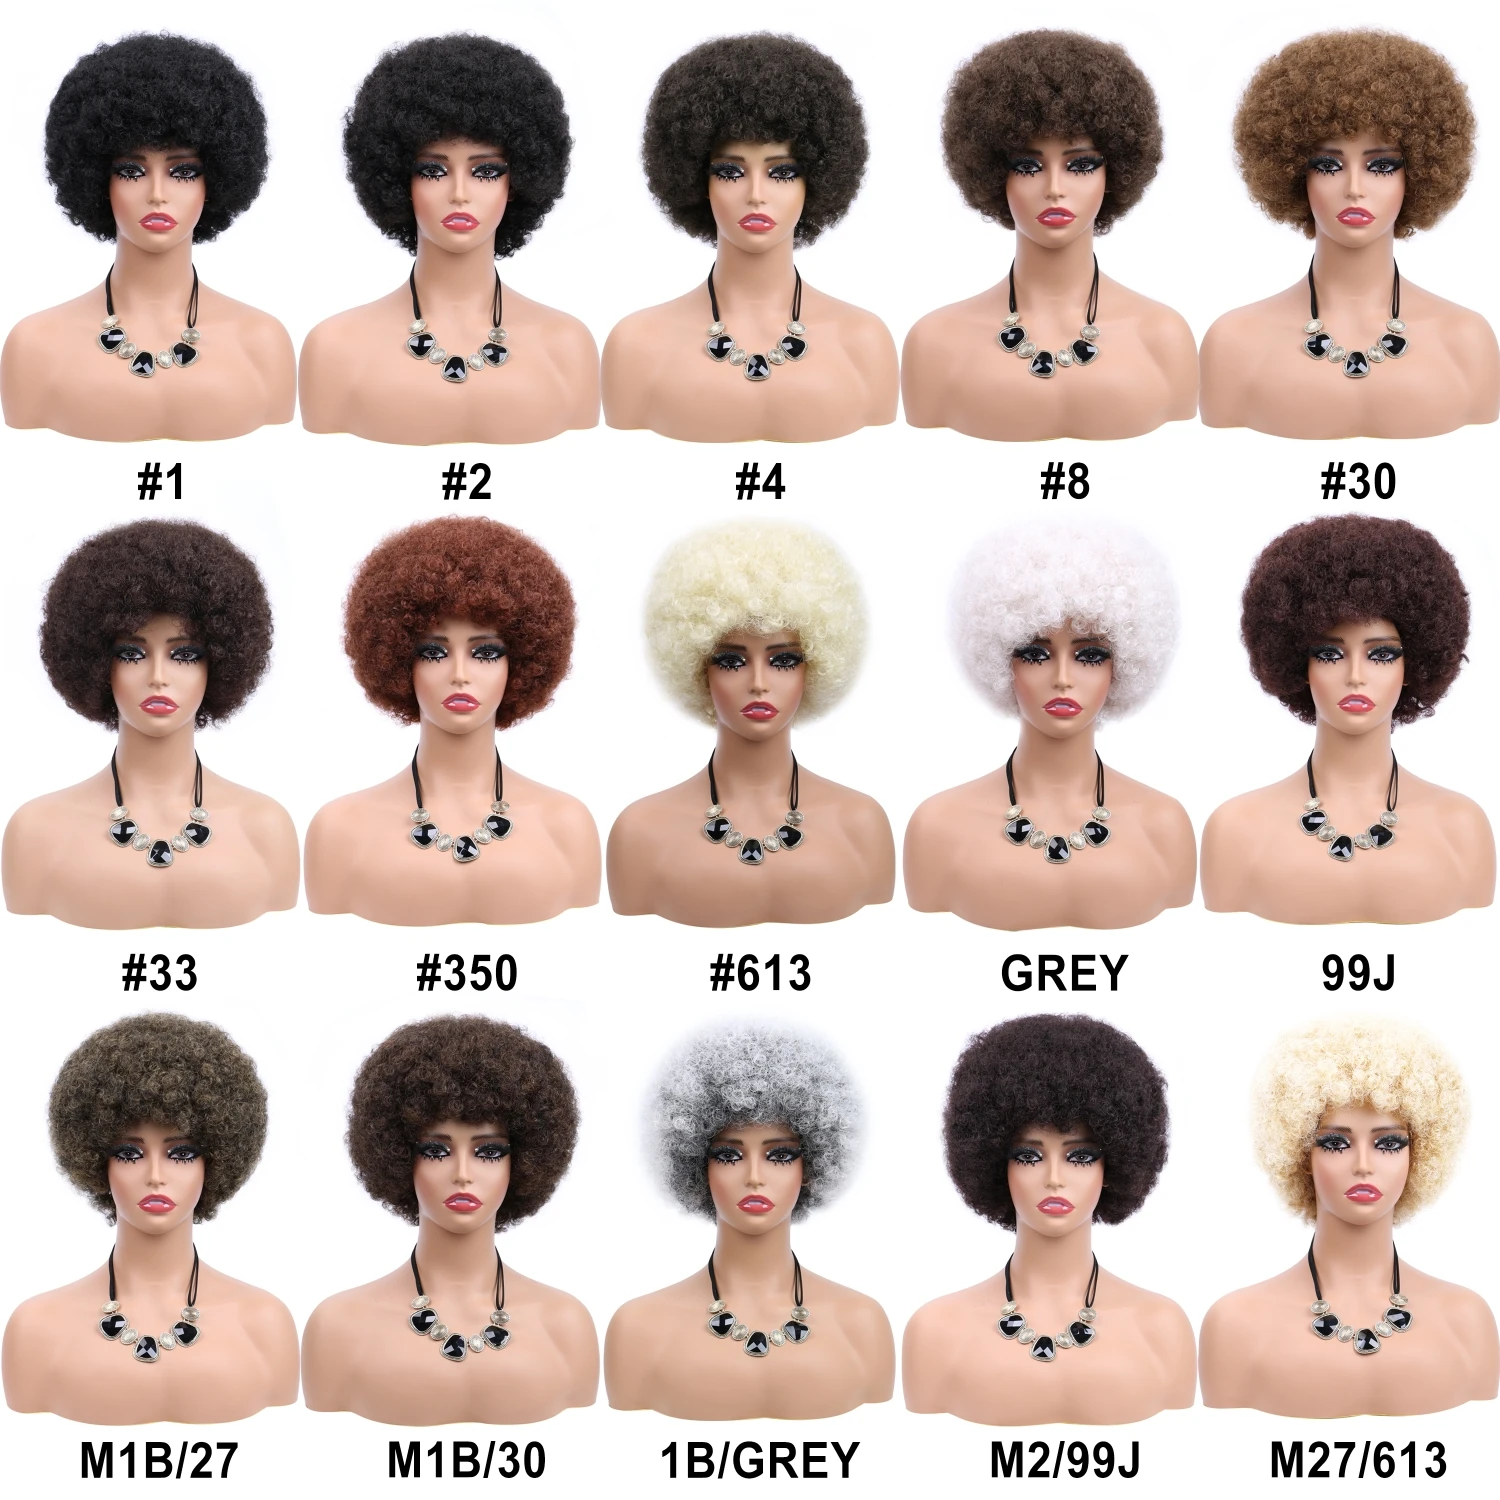 קצר Glueless טמפרטורה גבוהה שיער אפרו קינקי מתולתל פאה עם פוני לנשים שחורות בלונדינית טבעי סינטטי Cosplay פאות - 4